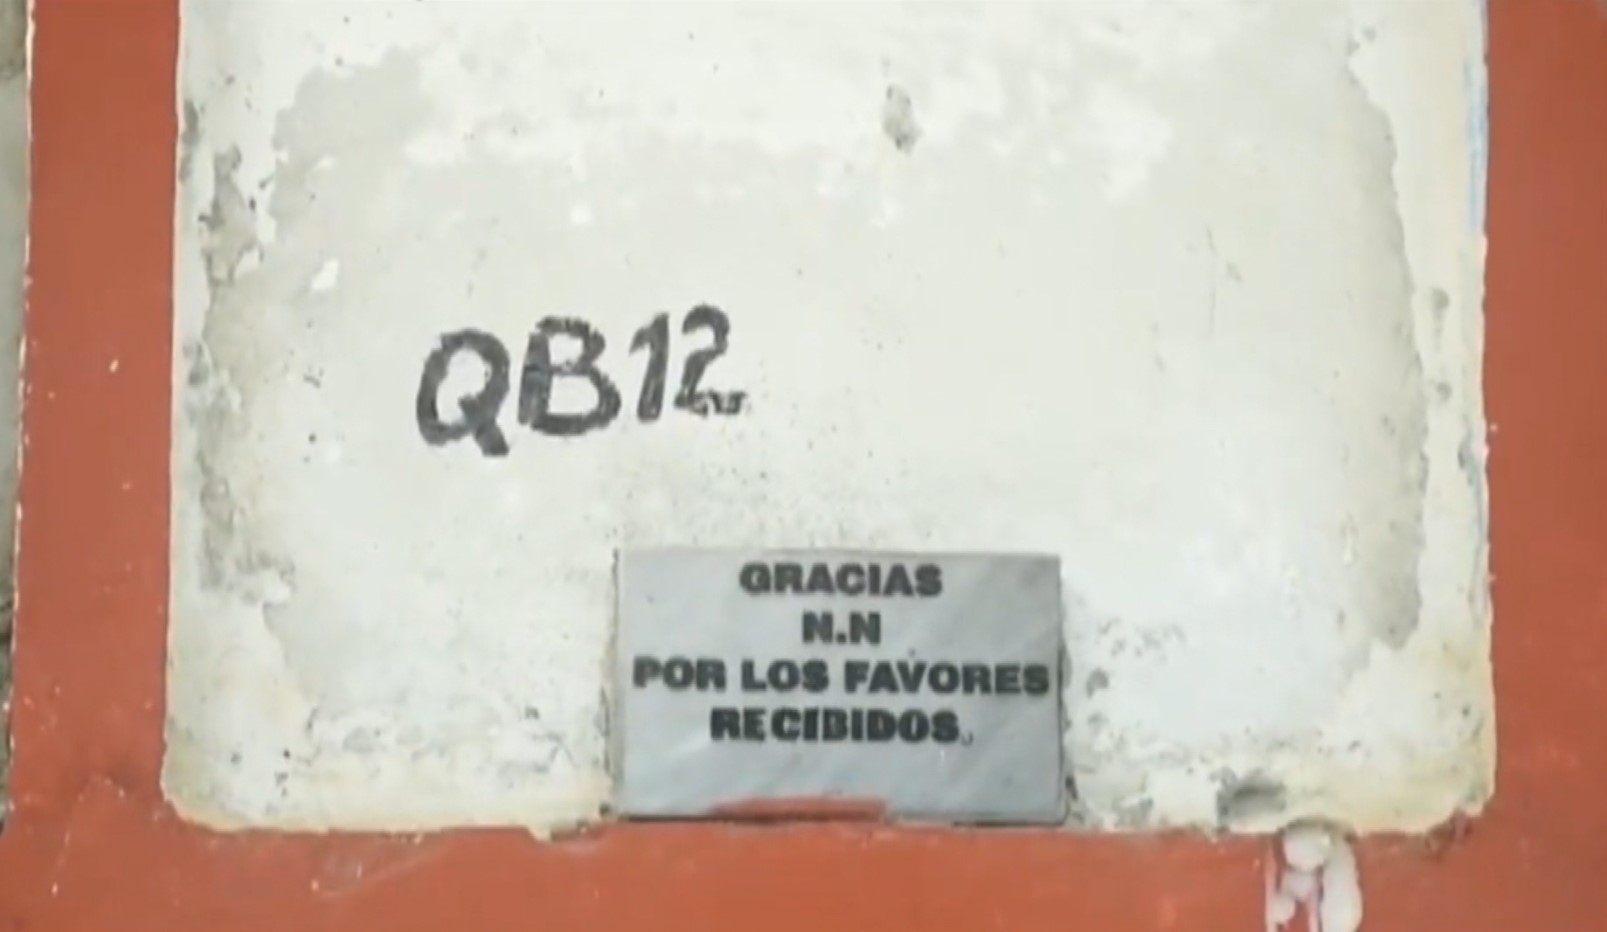 Antioquia: 73 cuerpos no identificados fueron recuperados en el cementerio de Puerto Berrio